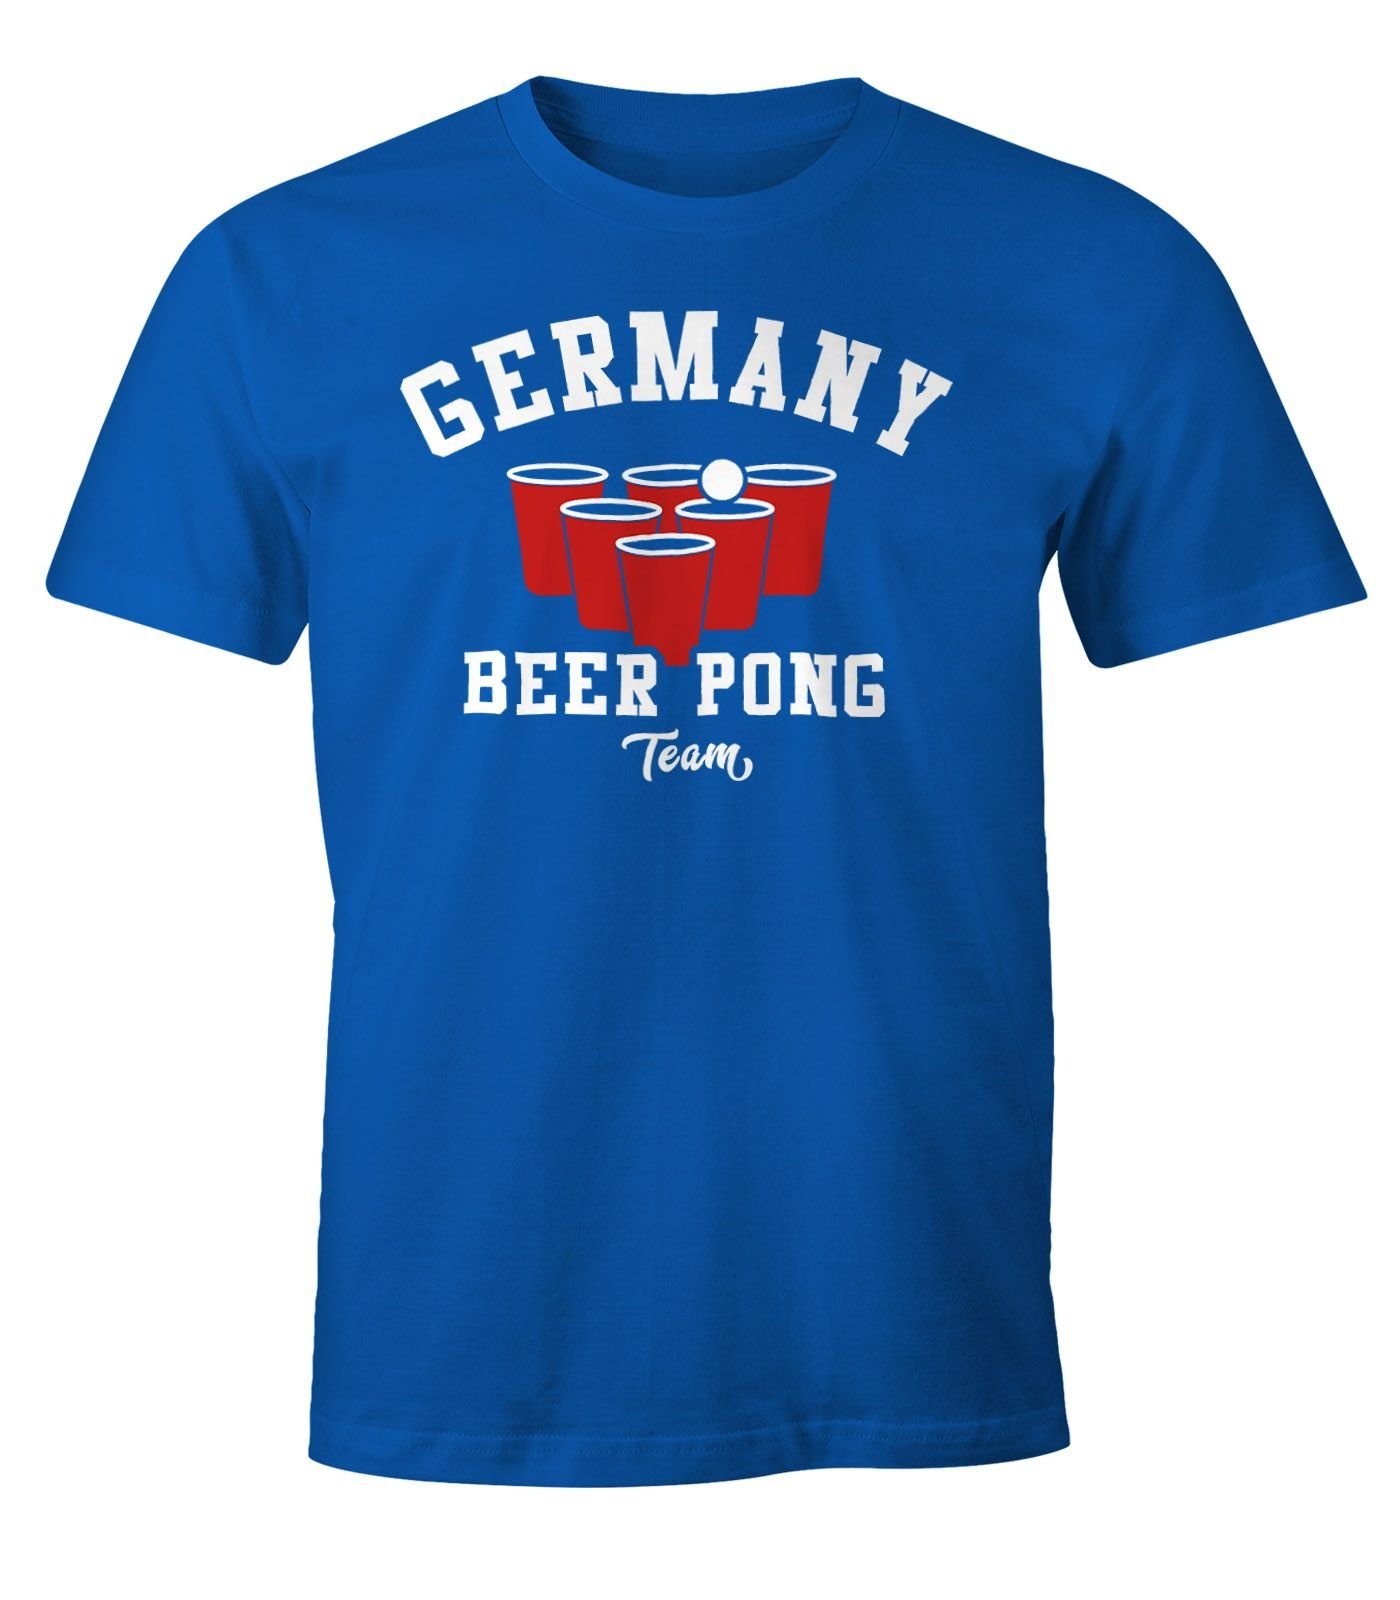 MoonWorks Print-Shirt blau Moonworks® Germany Bier Team Herren Fun-Shirt Print mit Pong Beer T-Shirt